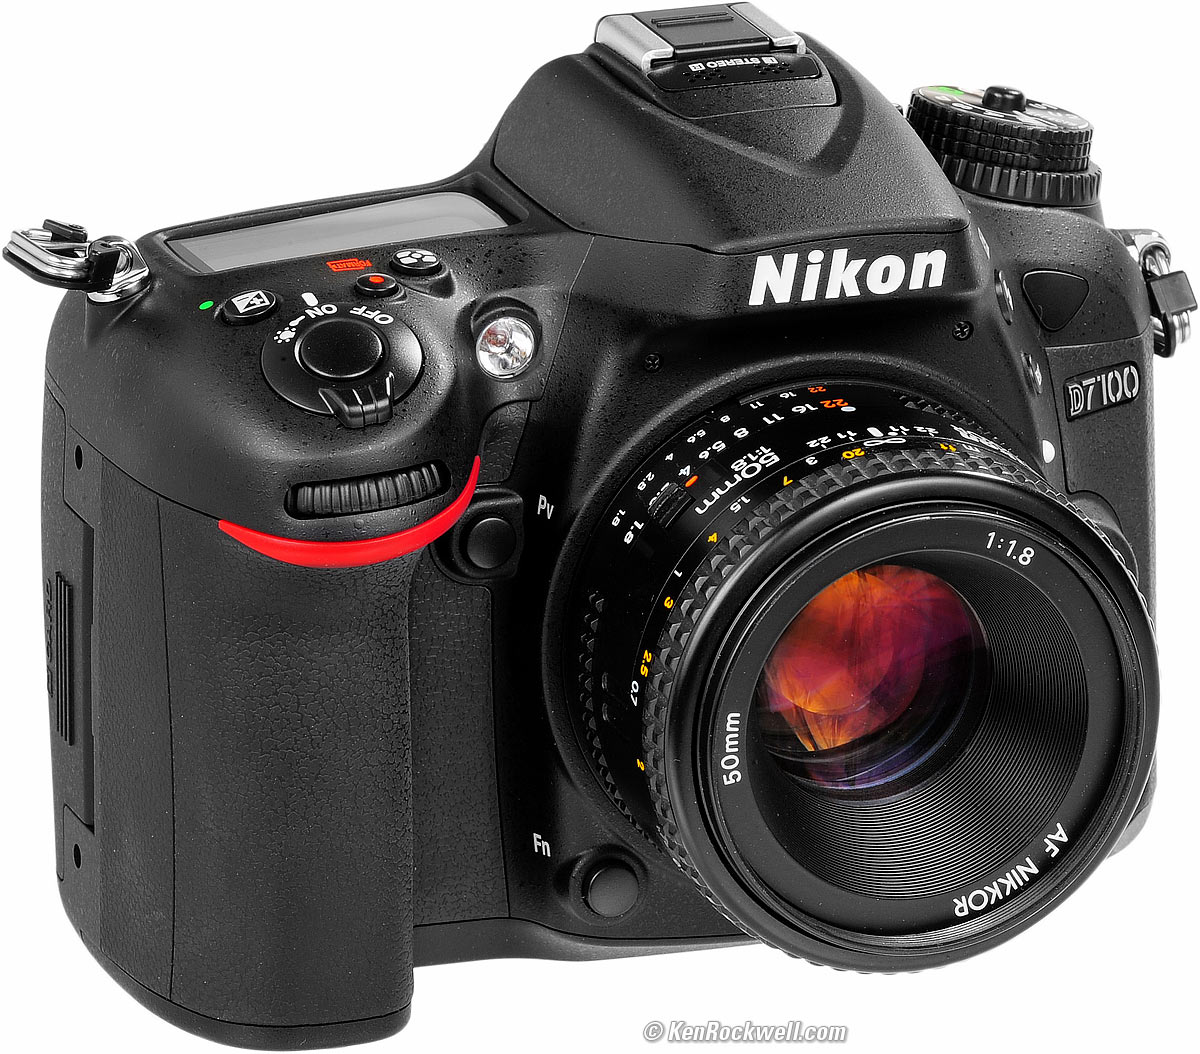 Nikon D7100 Review, Best Landscape Lens For Nikon D7100